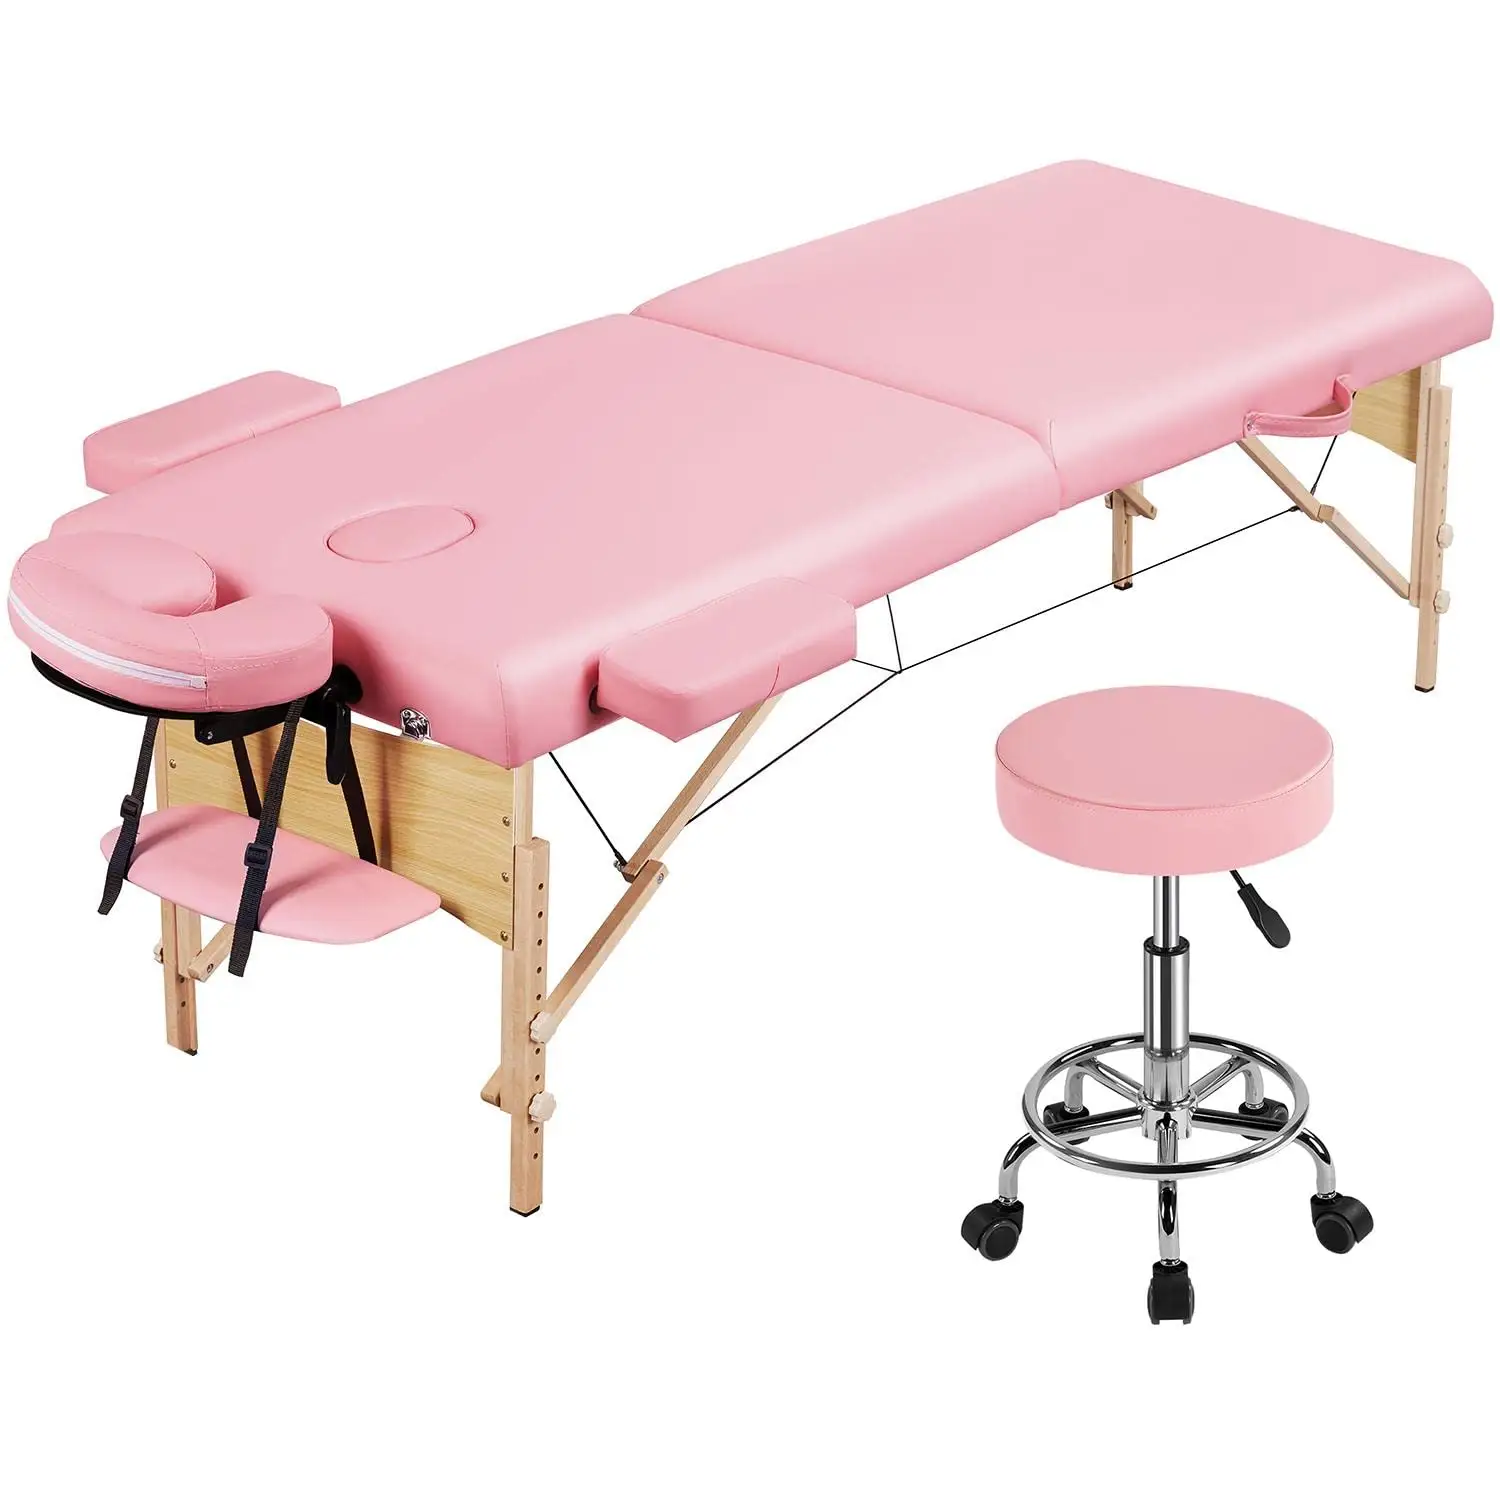 Sukar Mesa de massagem portátil de espuma de memória luxuosa rosa para massagem, maca para cílios, mesa de massagem portátil